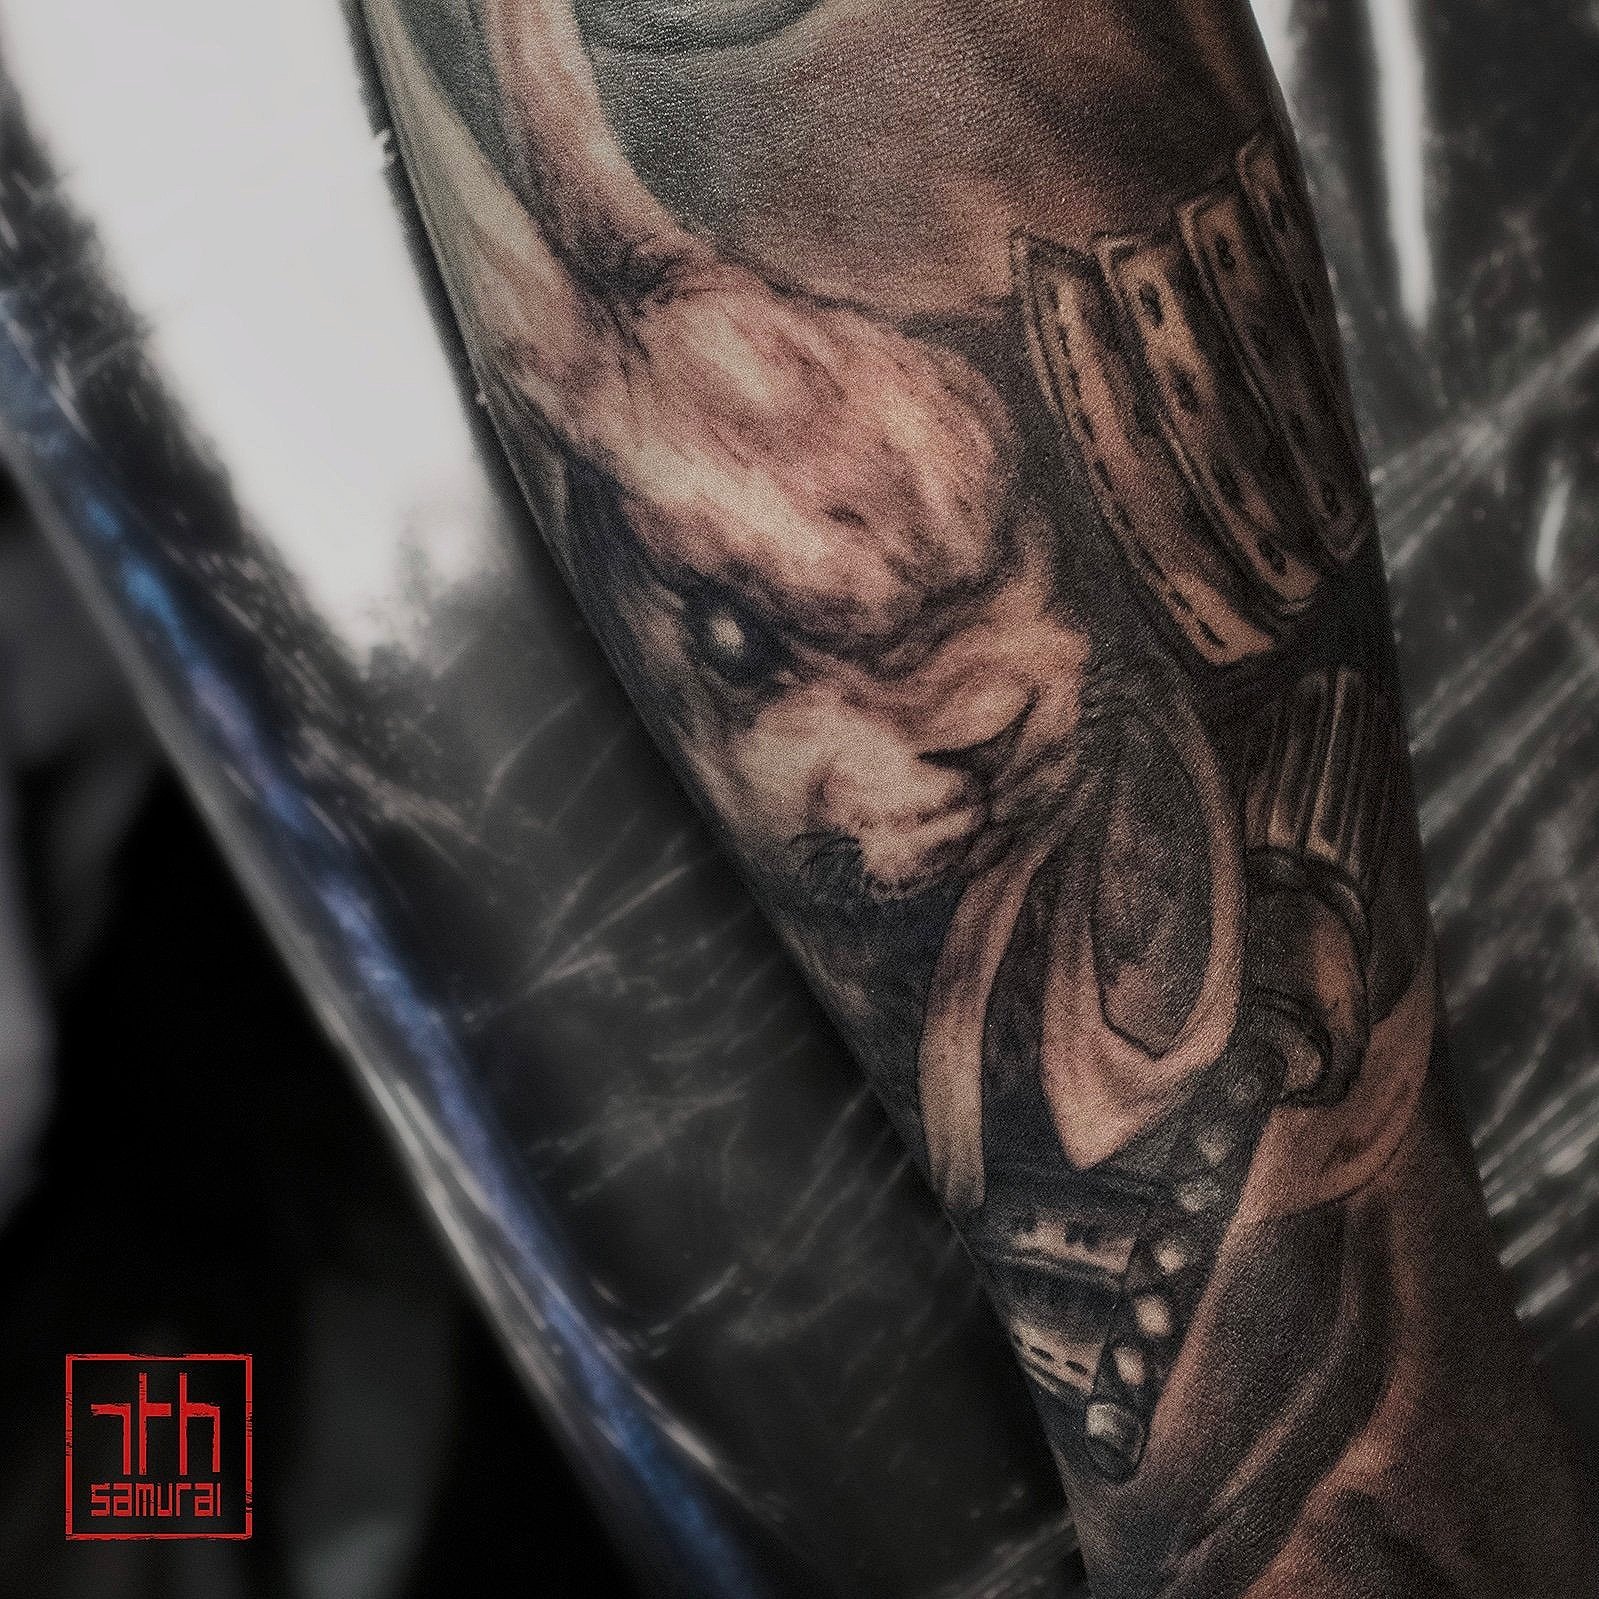 japanese Samurai rabbit  Men's forearm tattoo  artist: Kai at 7th Samurai. YEG Edmonton, Alberta, Canada 2020